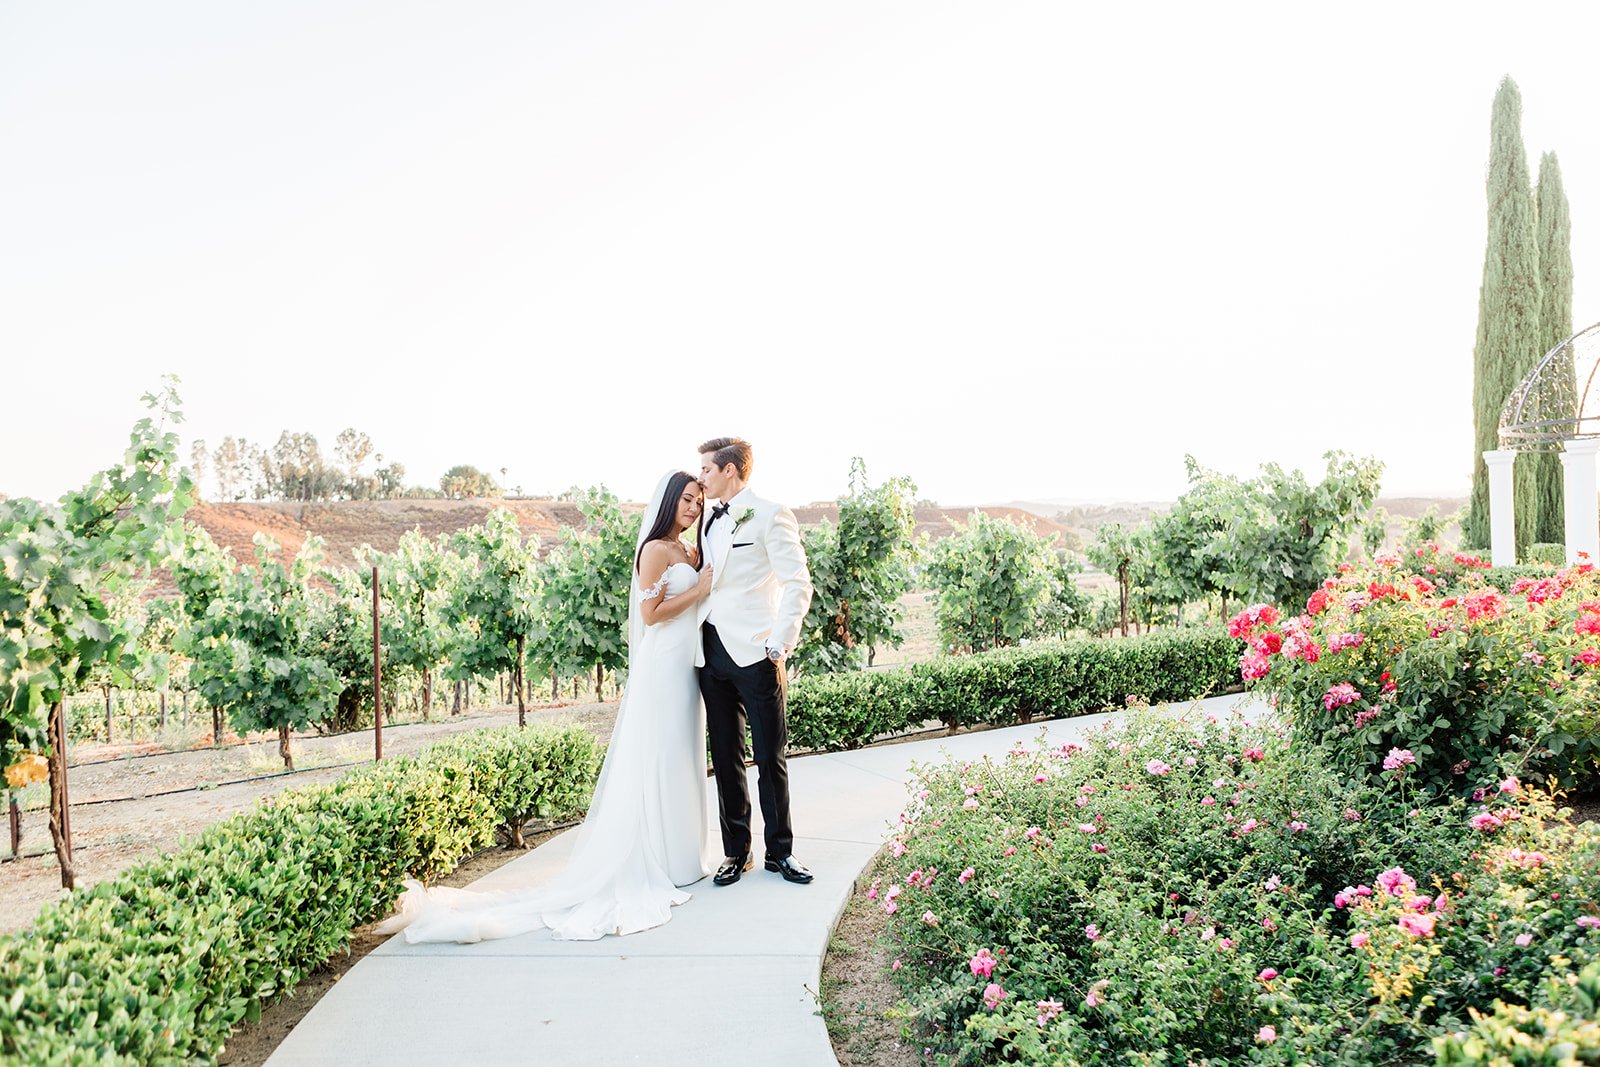 Top 5 Romantic San Diego Wedding Venues 